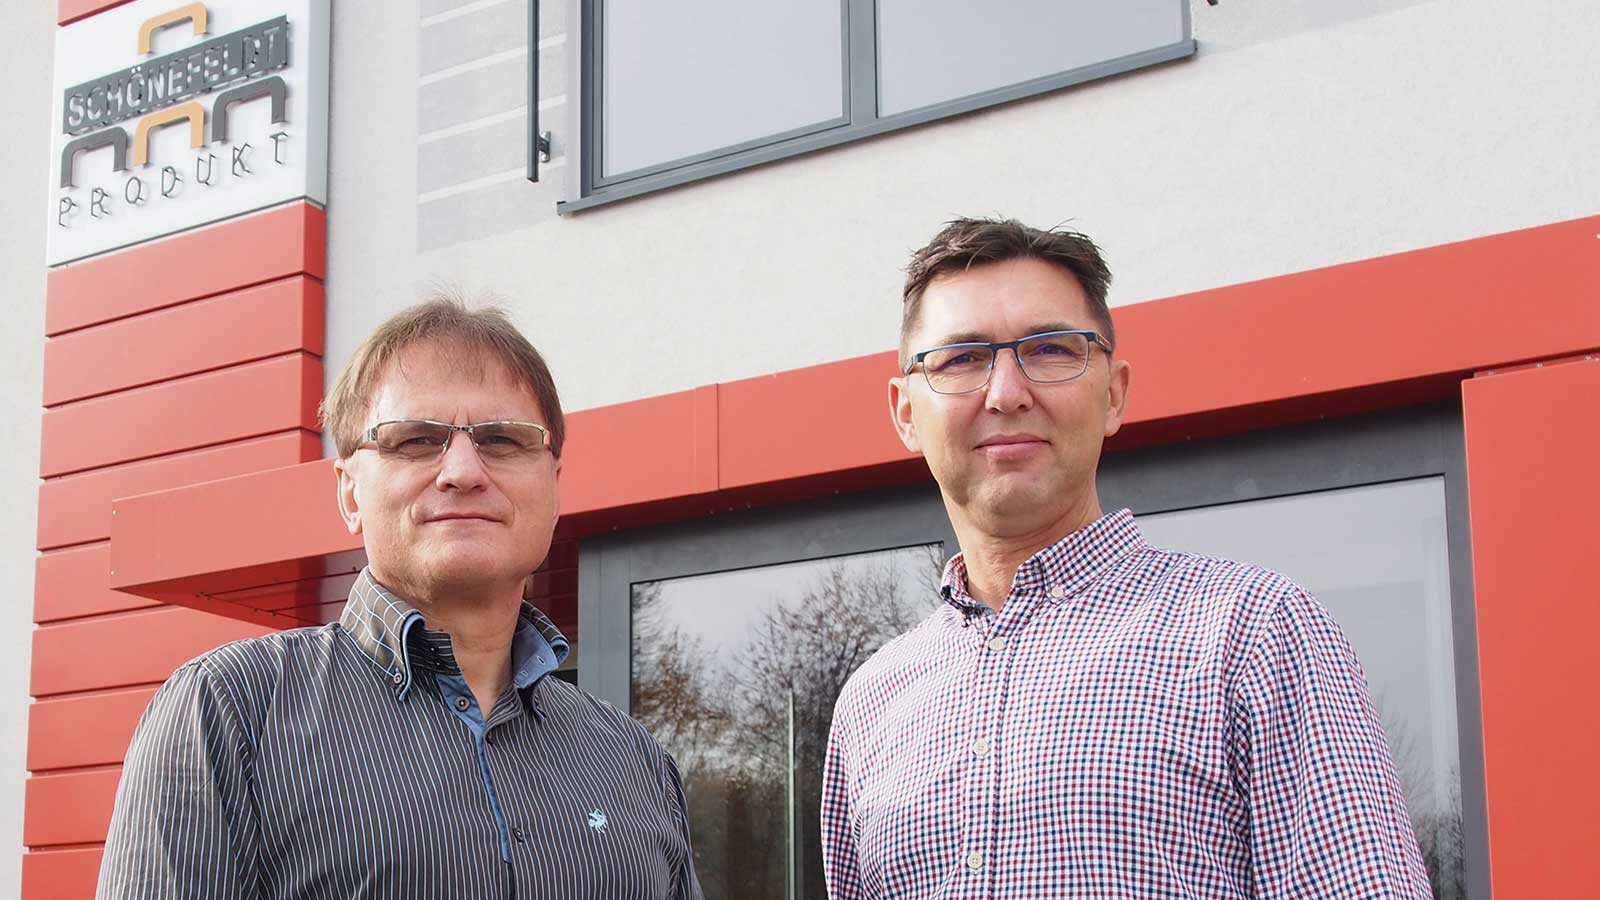 アンドレアス・バルヌーヴァイト (左) とアンドレアス・ヴァツィンガーは、会社を有能なパネル加工の製造専門企業に発展させました。